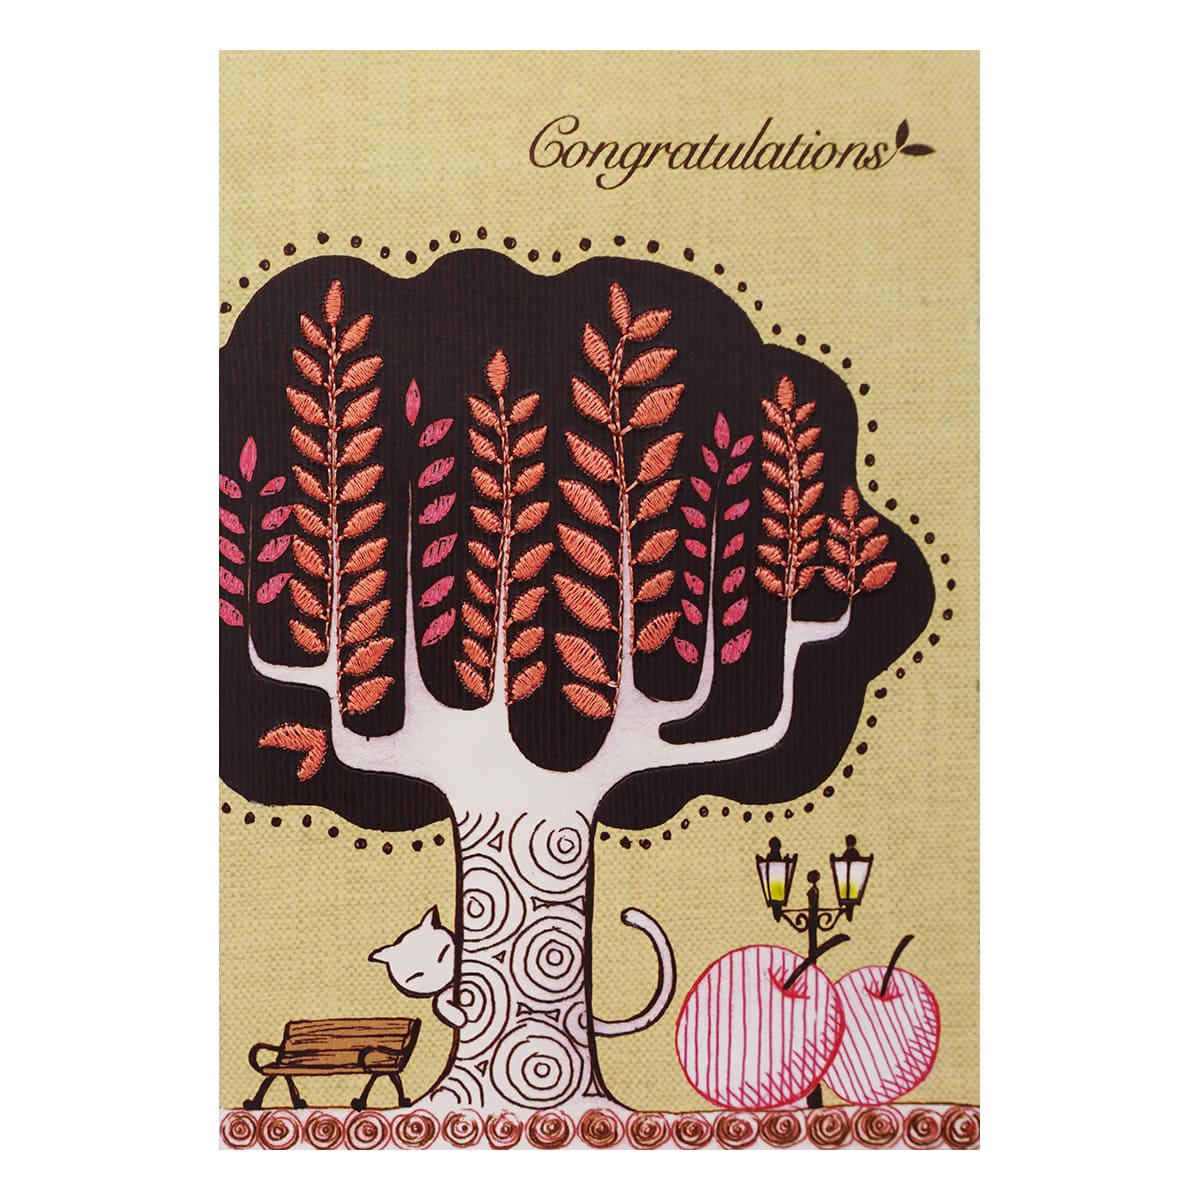 MWA06 Поздравительная открытка с вышивкой Congratulations, 12*17 см.(конверт в комплекте)